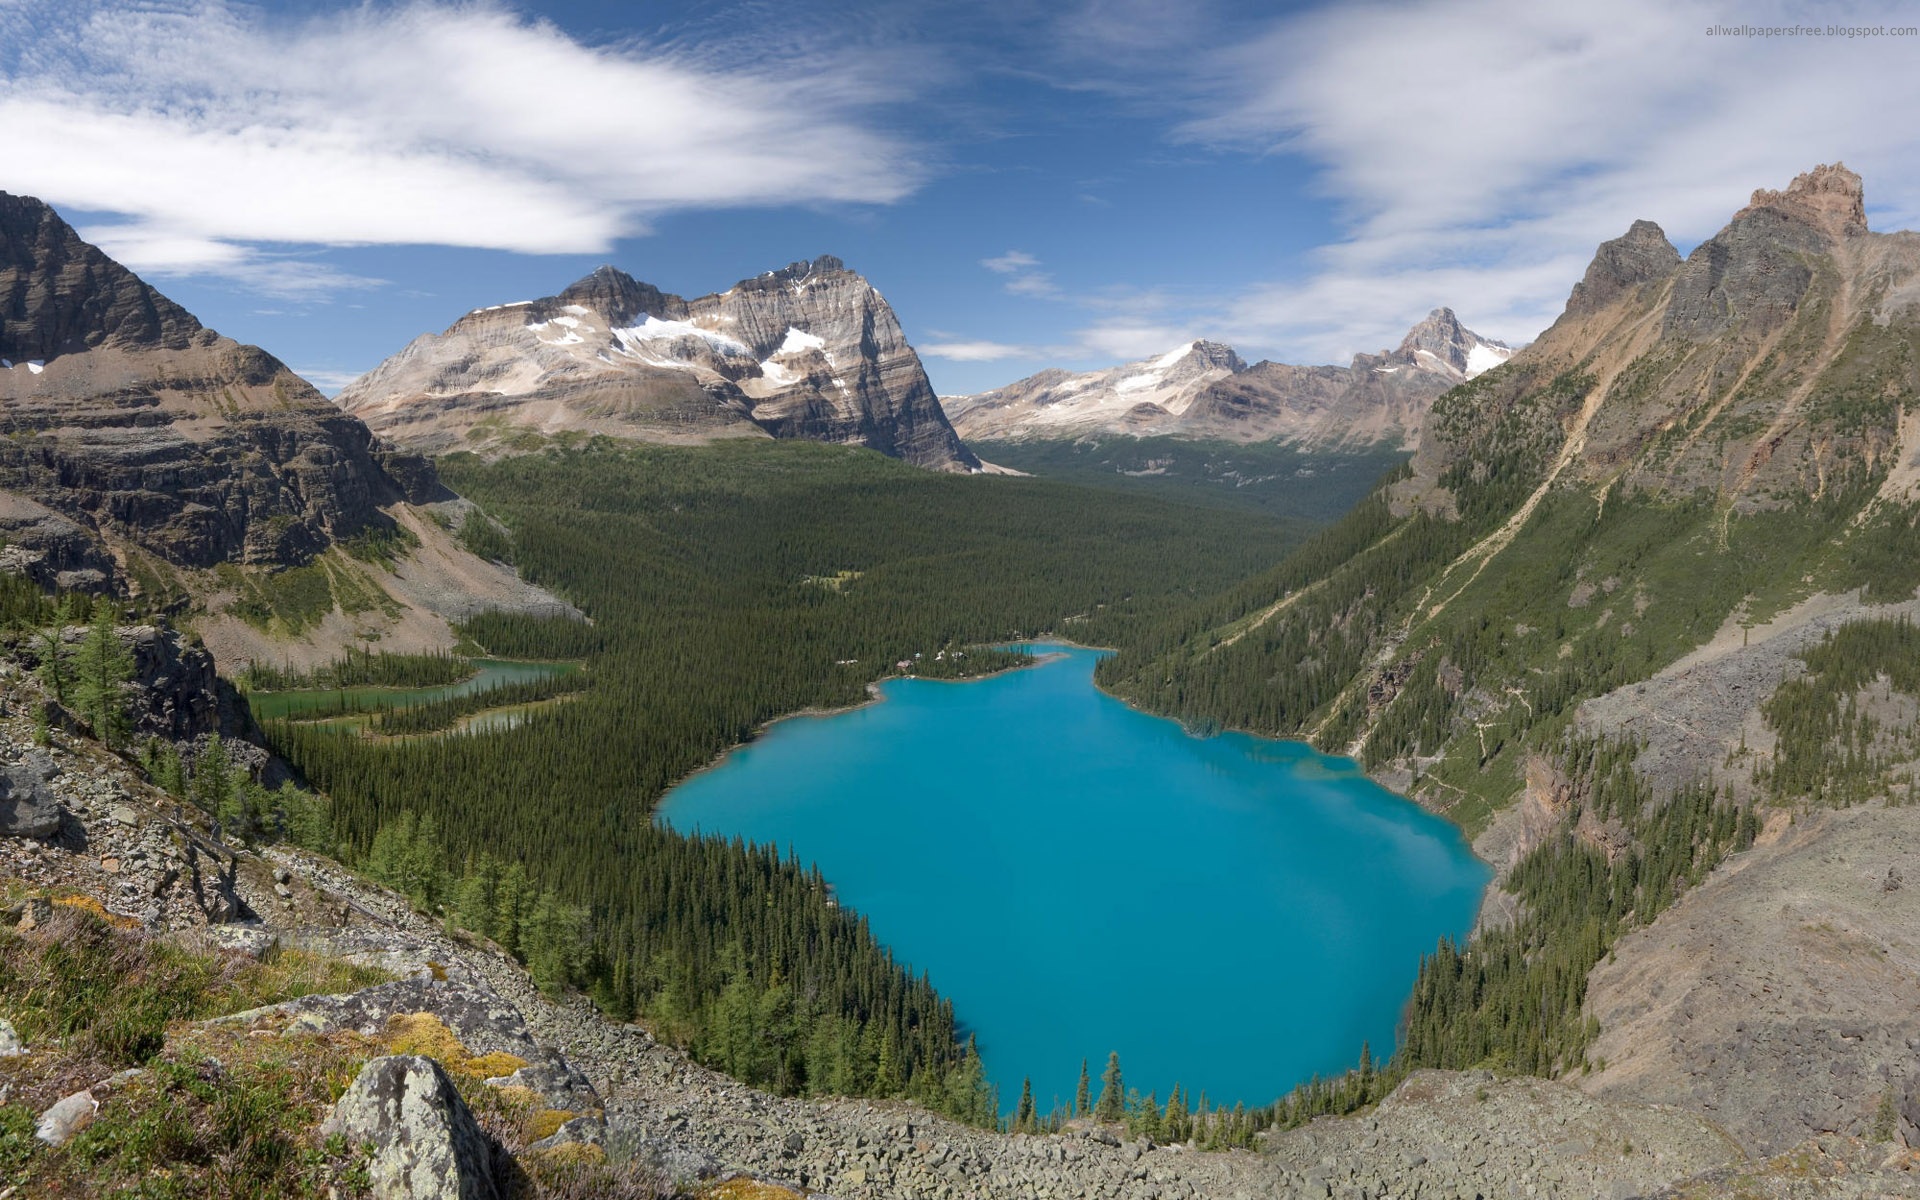 تصویر هوایی دریاچه بدیع آبی رنگ با کیفیت بالا full hd